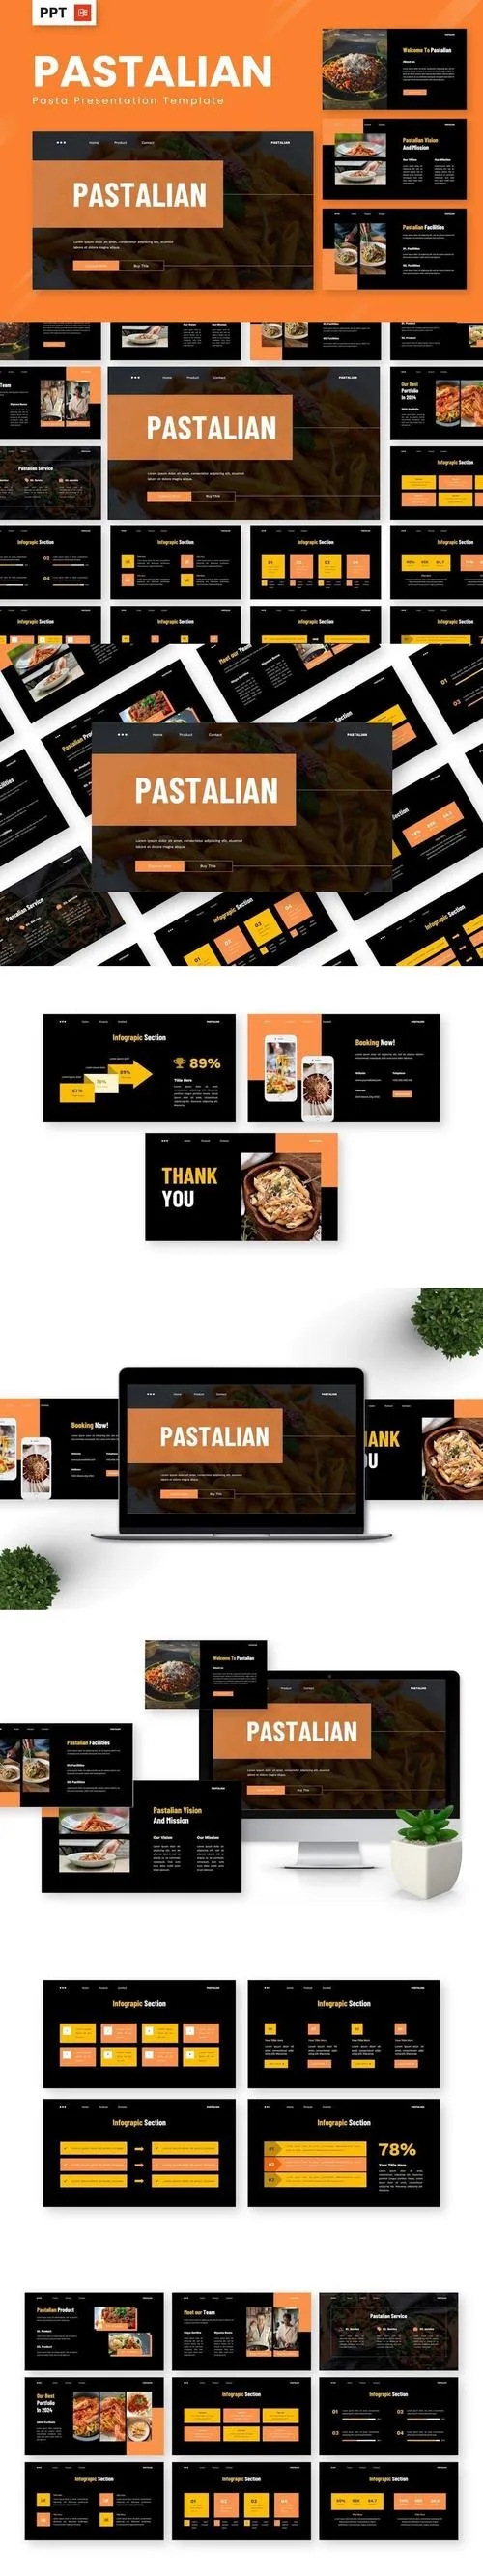 Pastalian - Pasta Powerpoint Templates